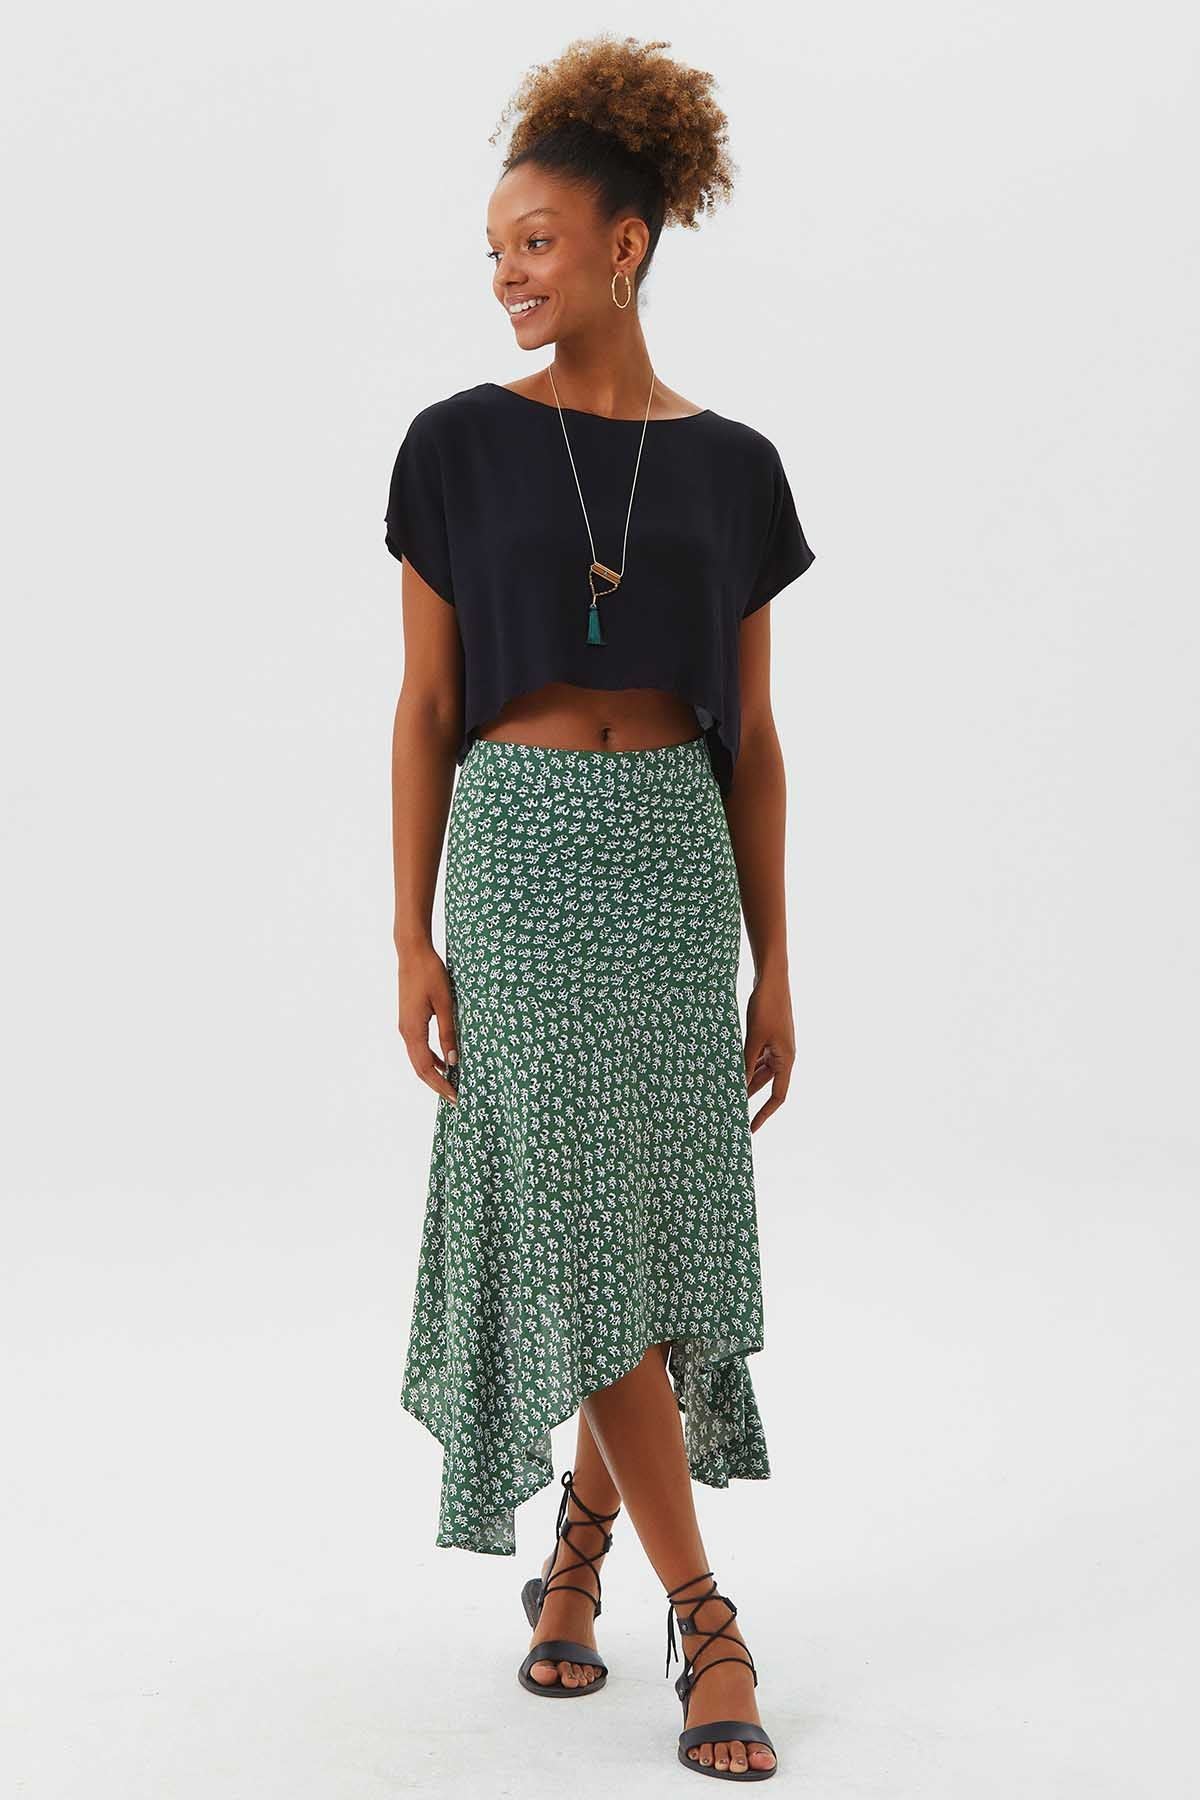 Asymmetric Cut Skirt With Waist Corsage Green